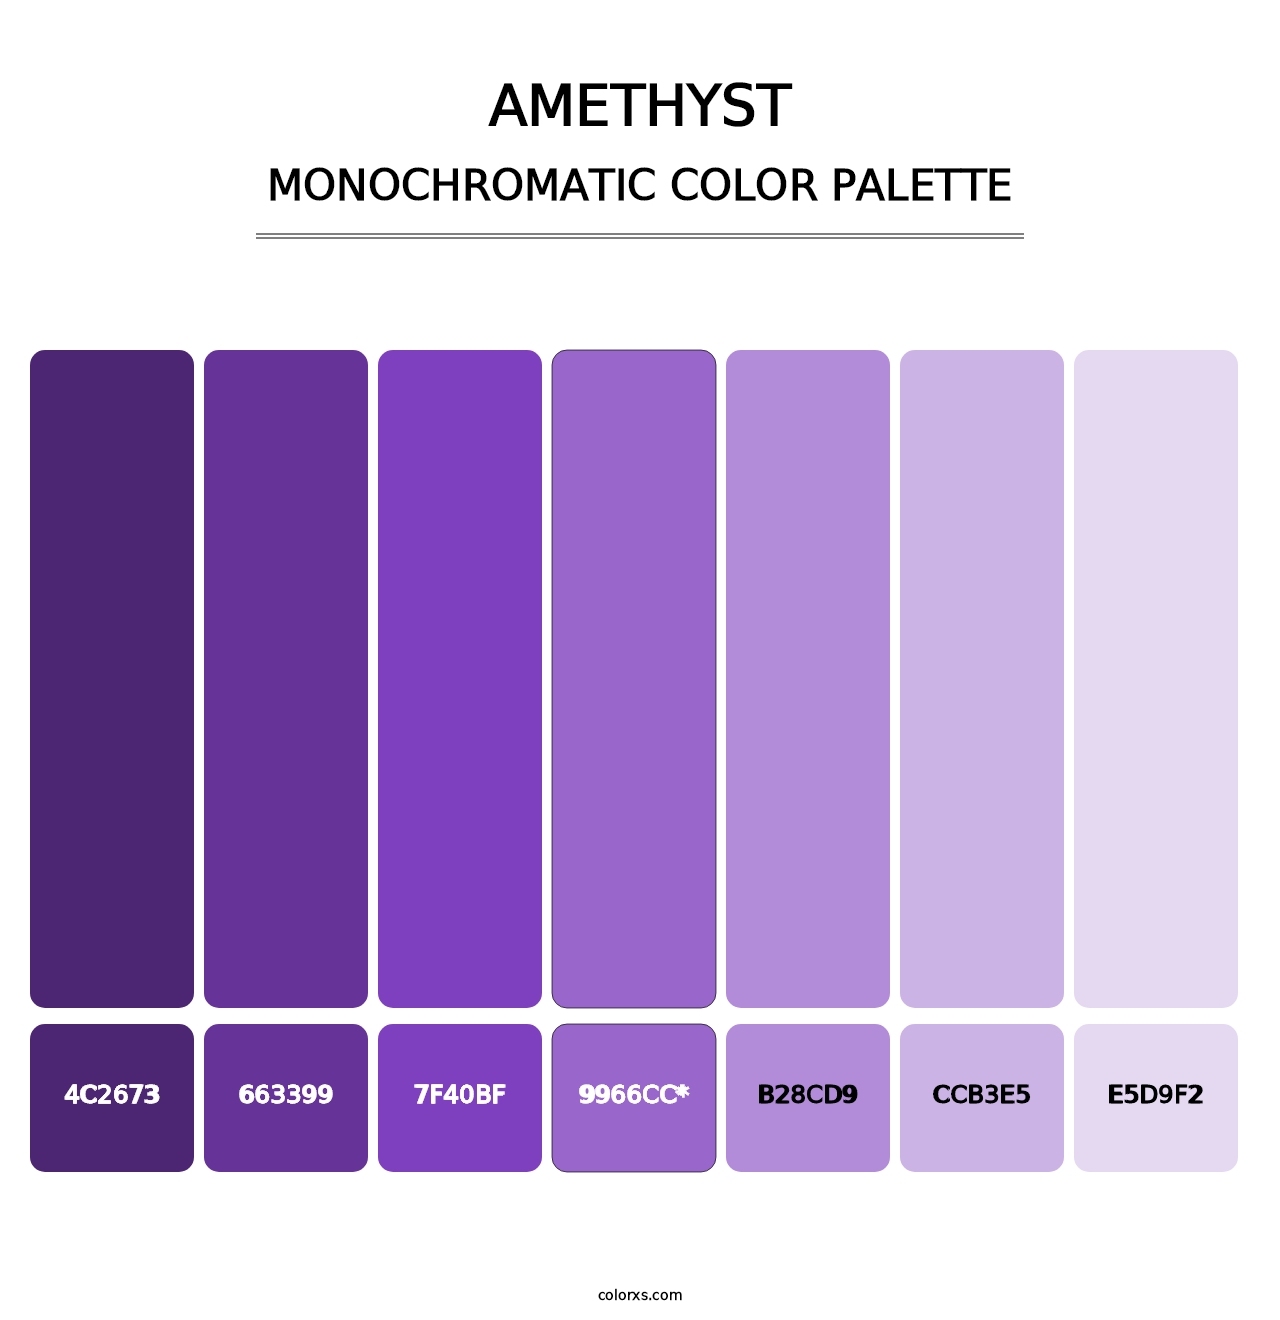 Amethyst - Monochromatic Color Palette